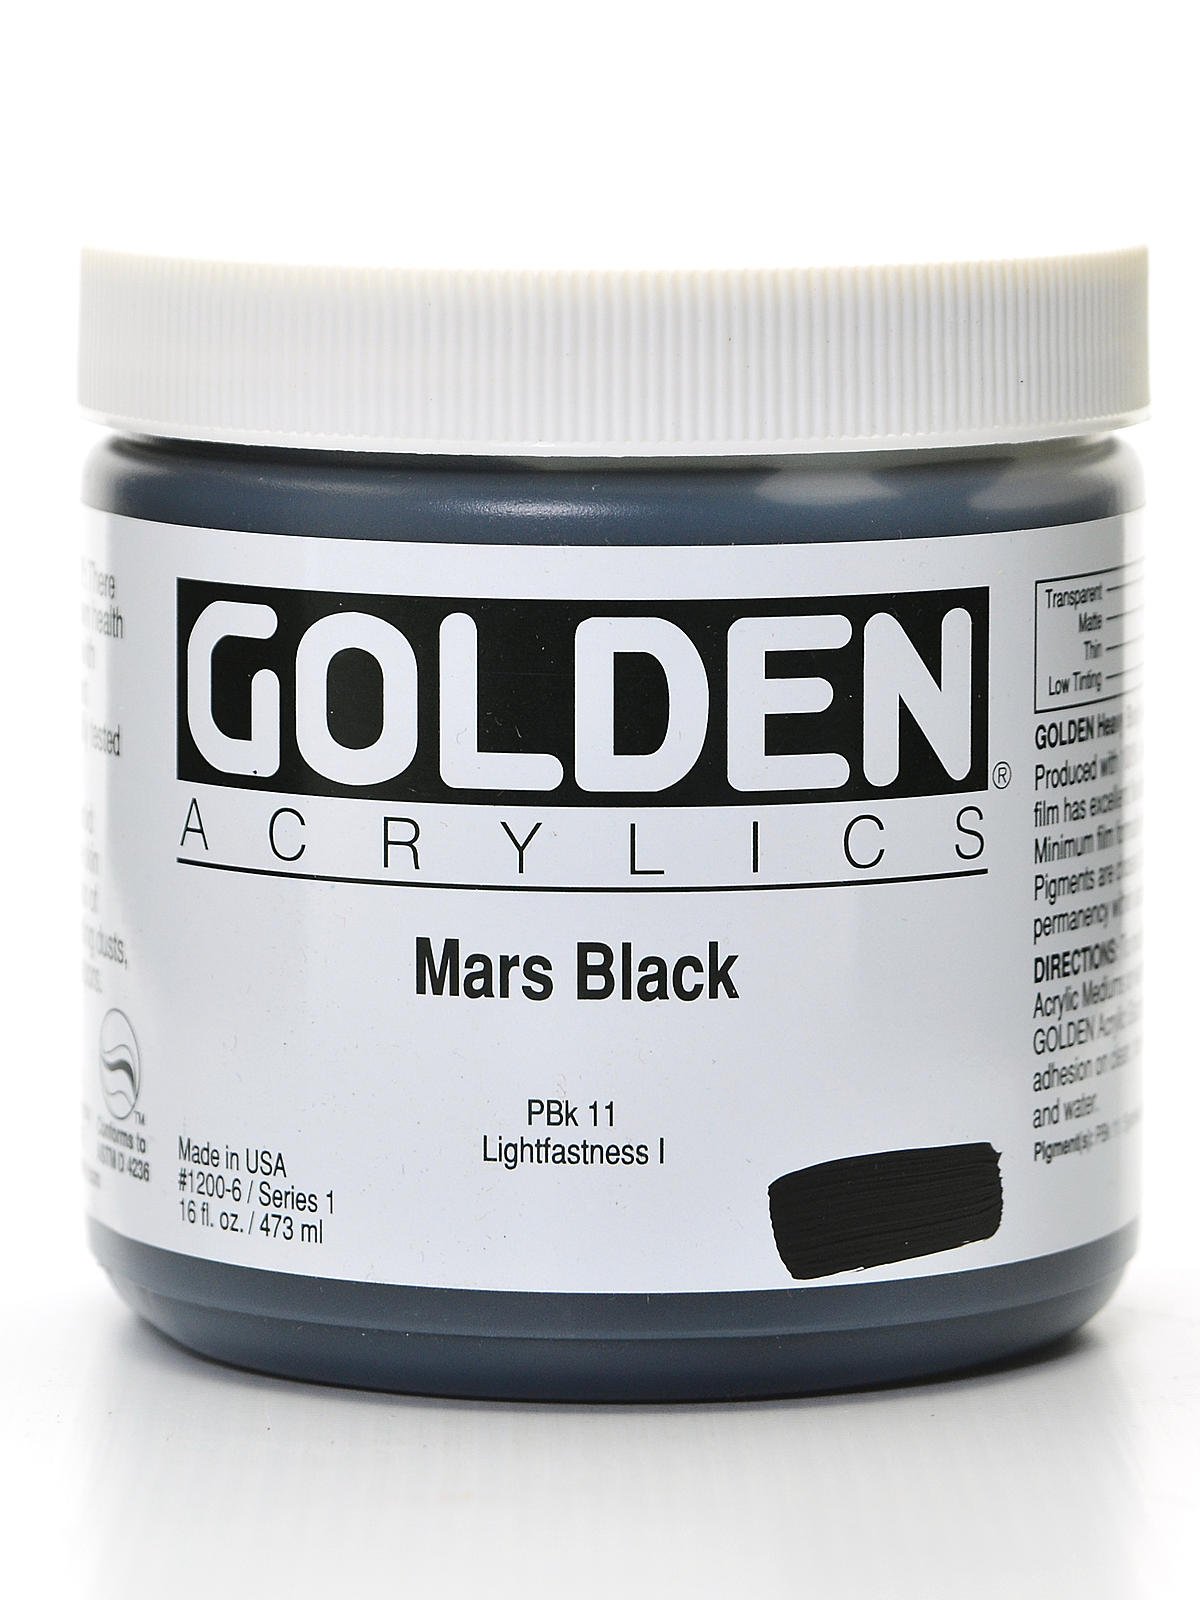 Mars Black